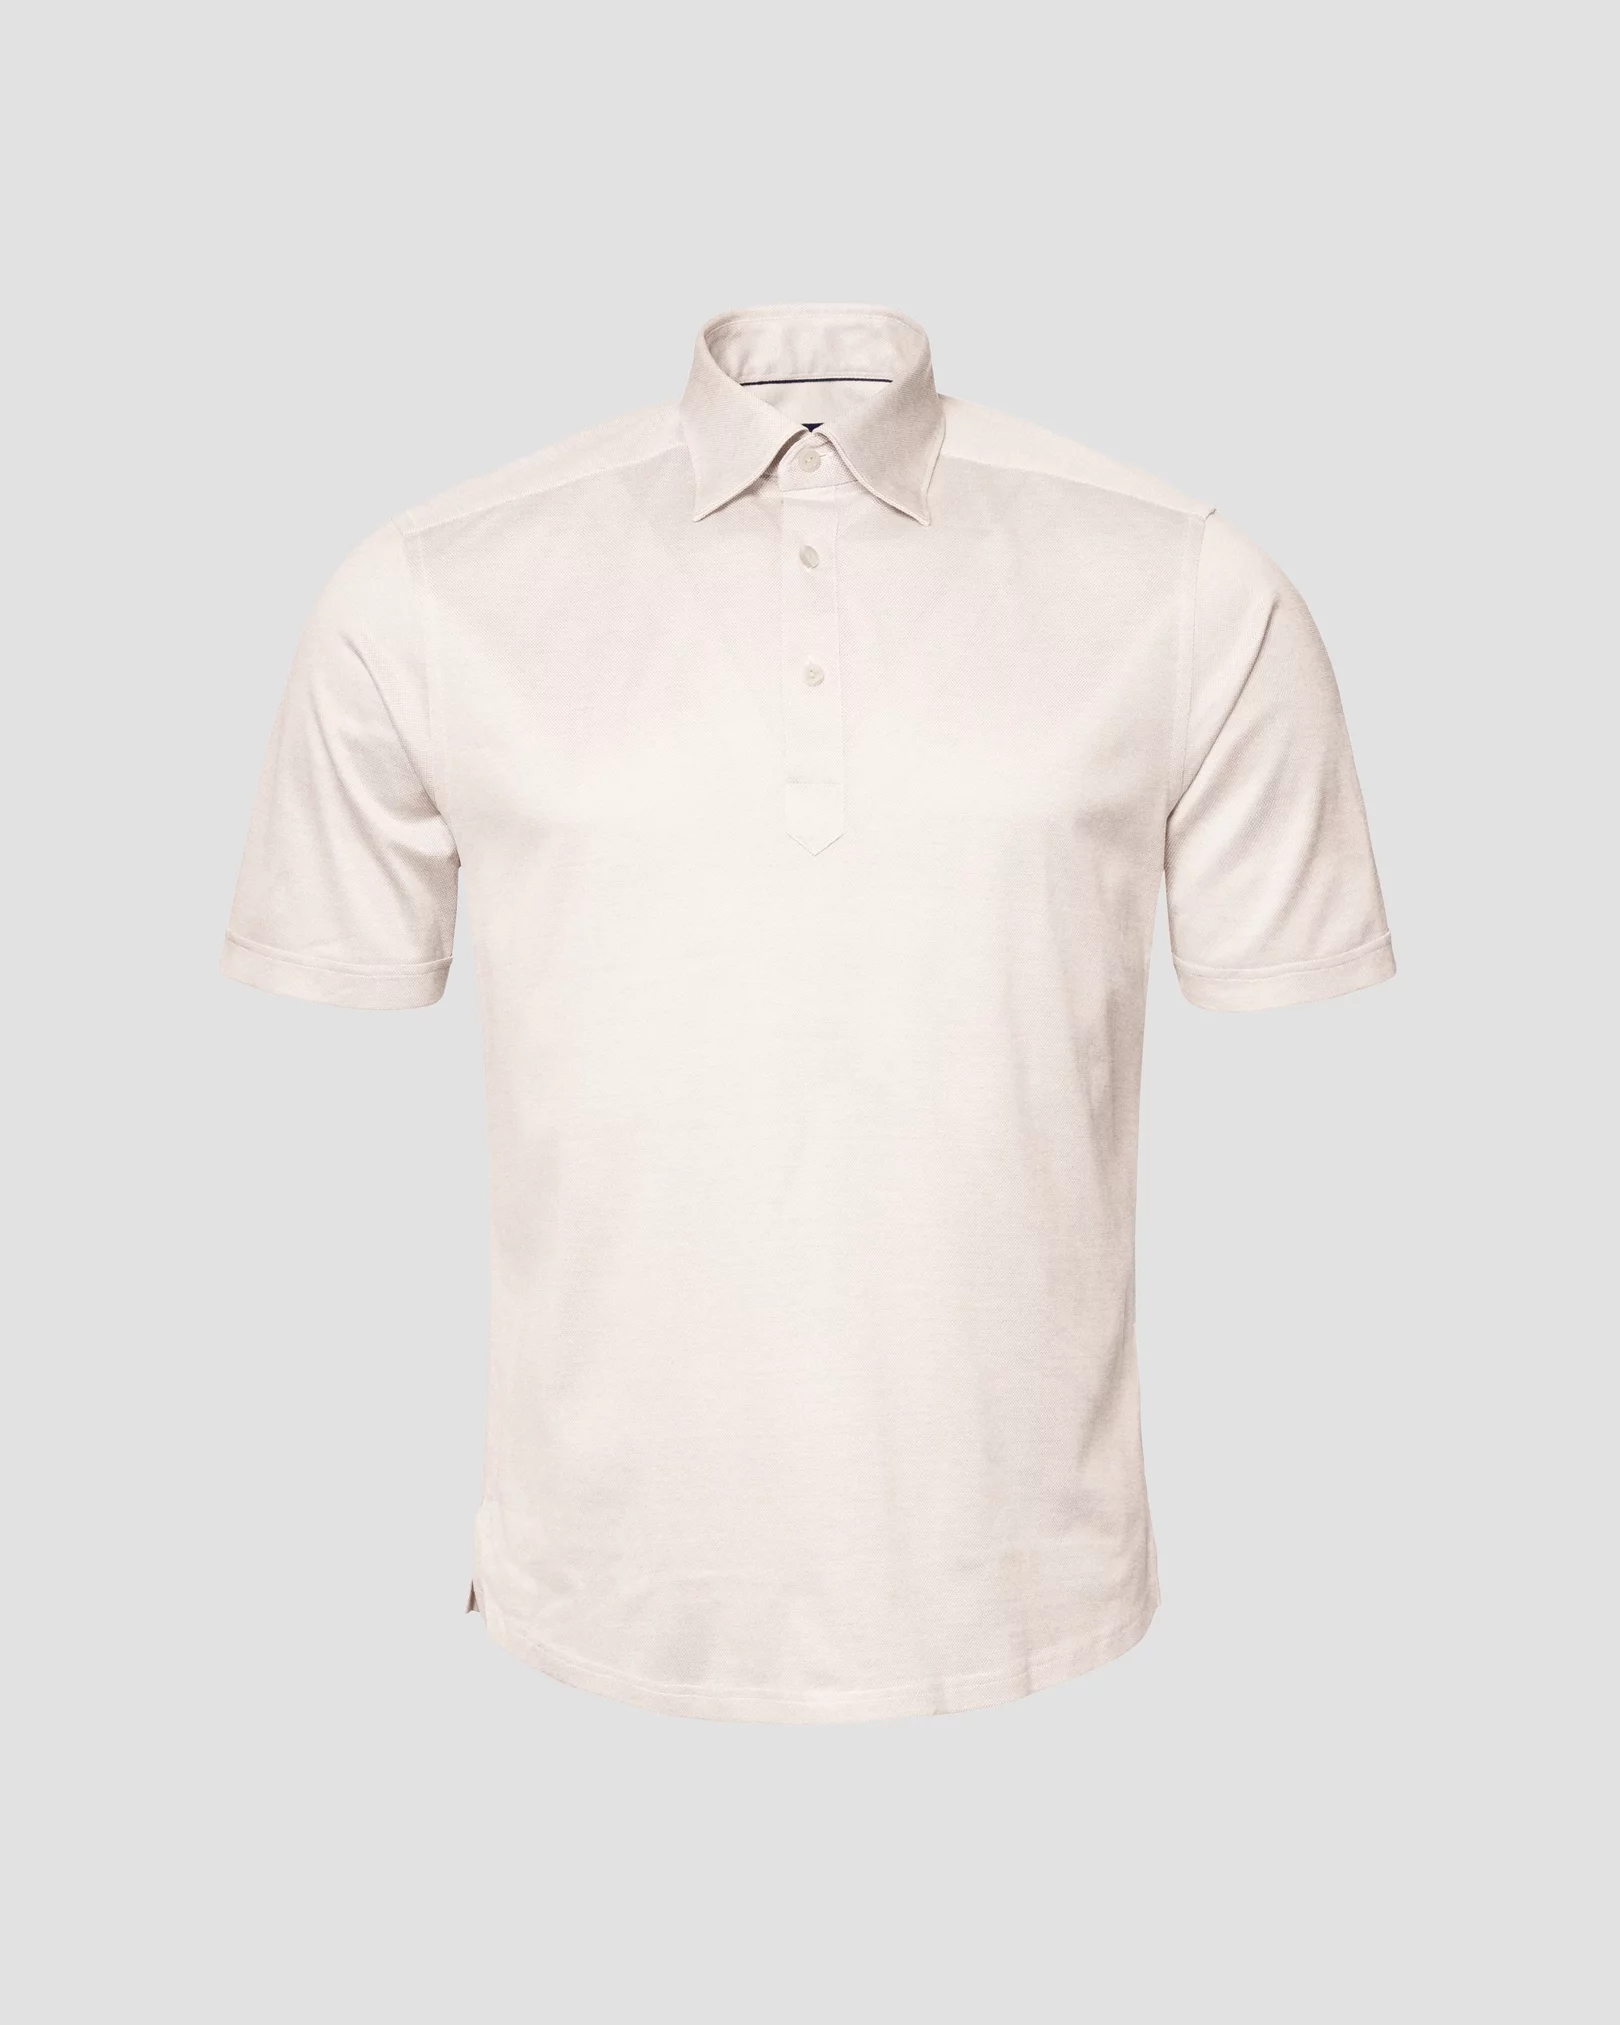 Eton - white jersey button under shot sleeve